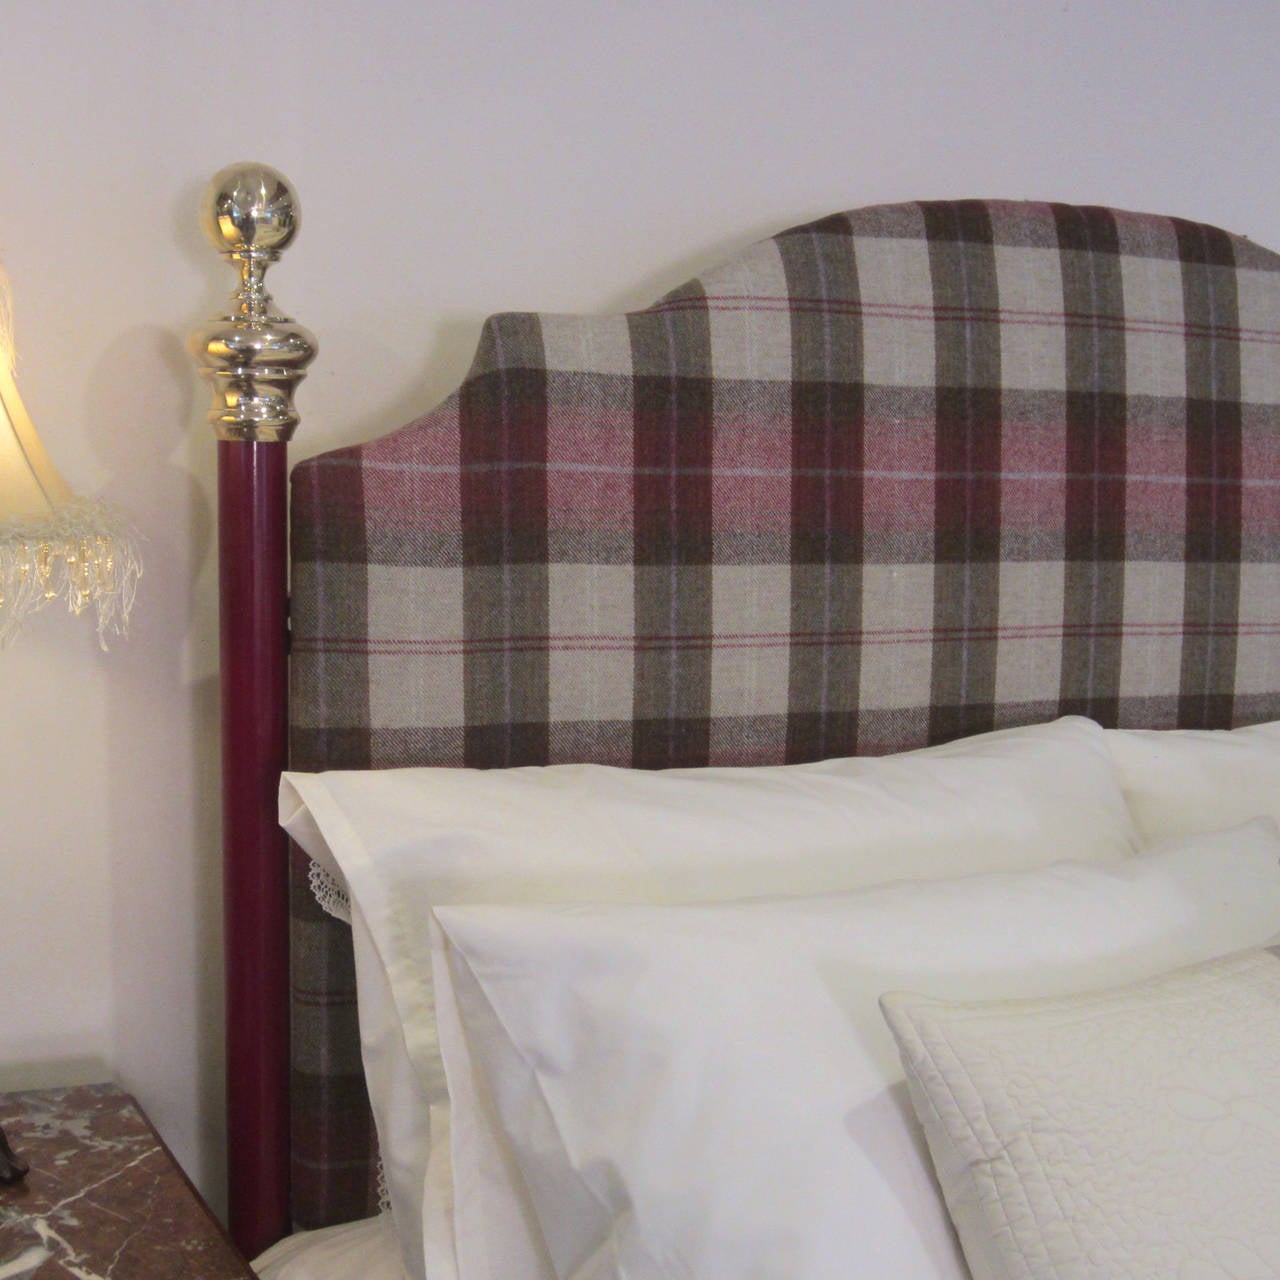 Einzigartiges Kingsize-Bett (amerikanisches Queensize-Bett), von uns entworfen und hergestellt. Ein Bett mit vollem Rahmen ohne Fußteil und mit einem hochwertigen gepolsterten Kopfteil. Dieser Bettrahmen kann in jeder gewünschten Farbe ausgeführt